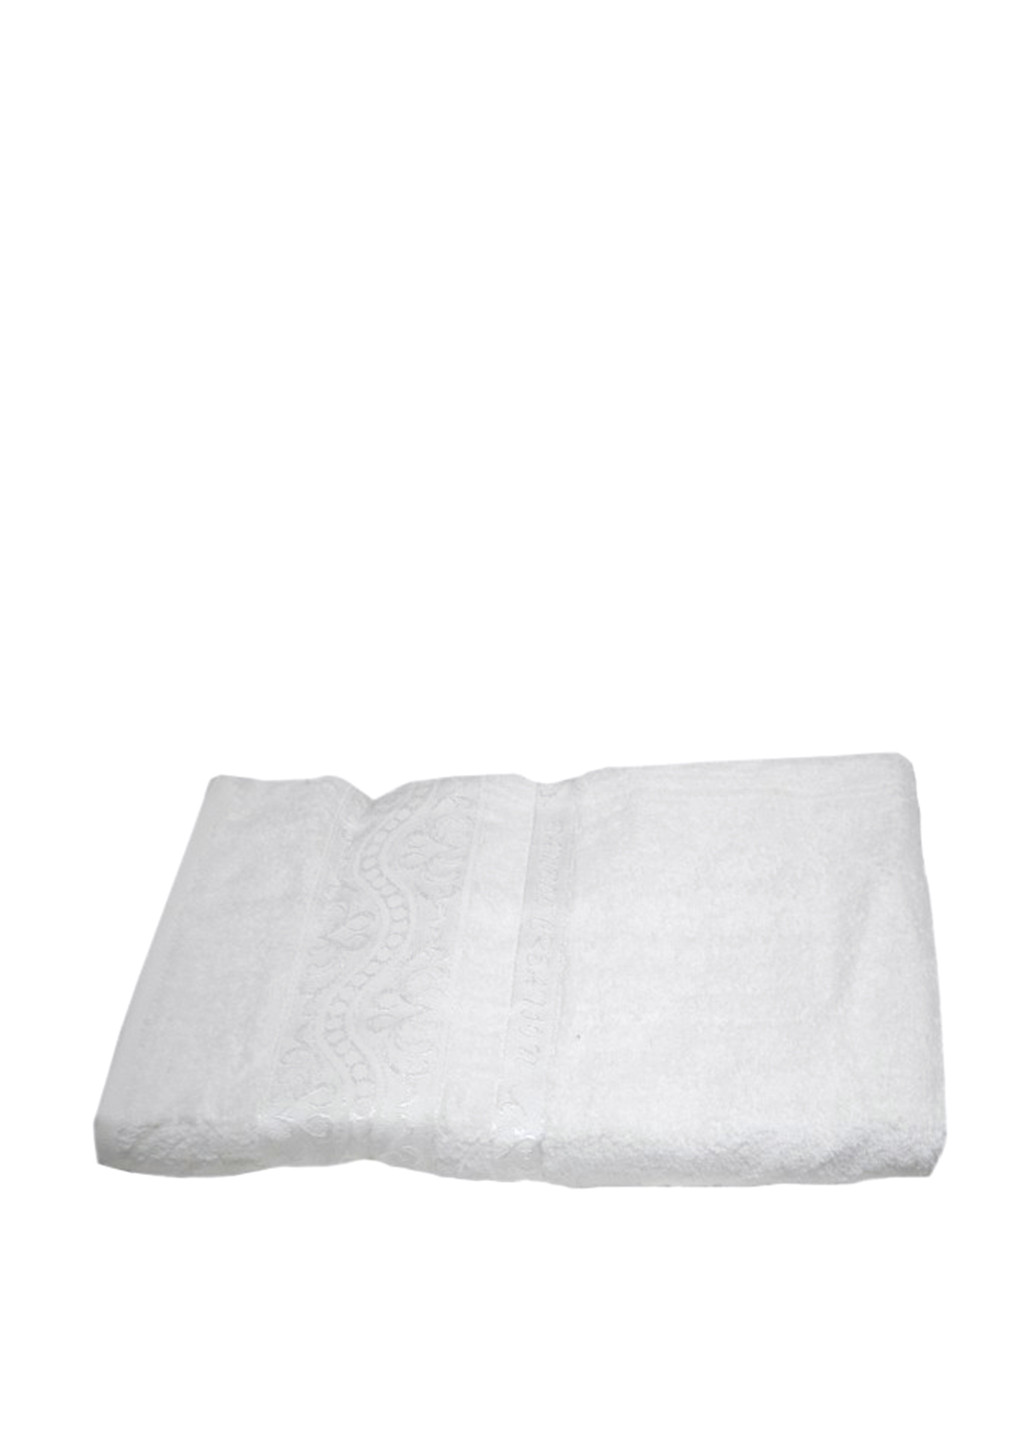 JULIA полотенце, 70х140 см орнамент белый производство - Турция